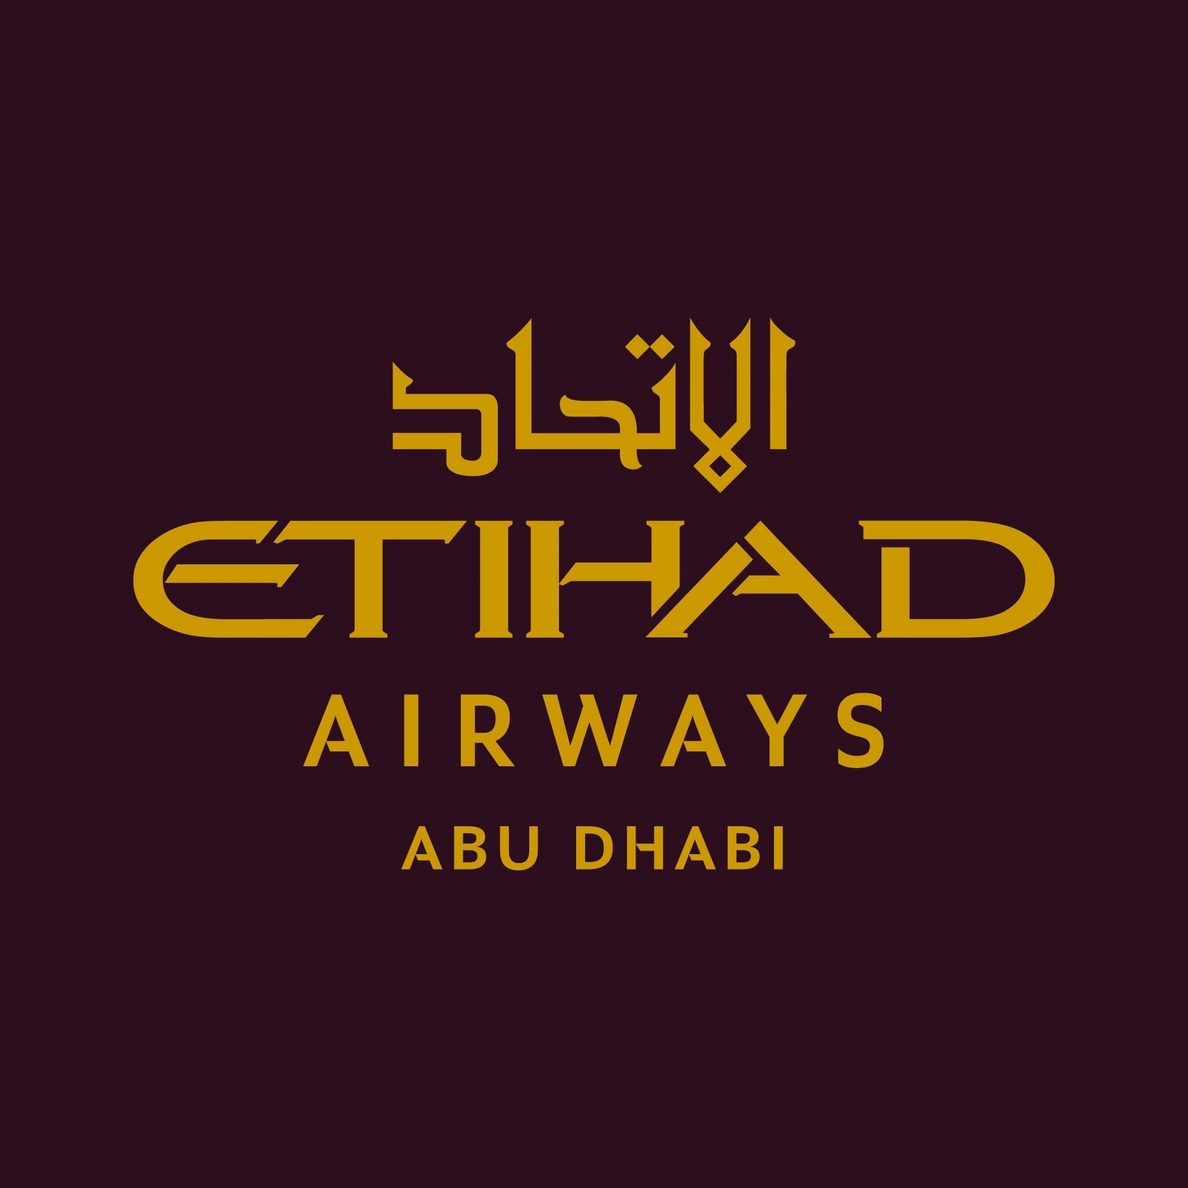 Etihad Airways recibió 2.191 millones de Abu Dhabi el pasado año